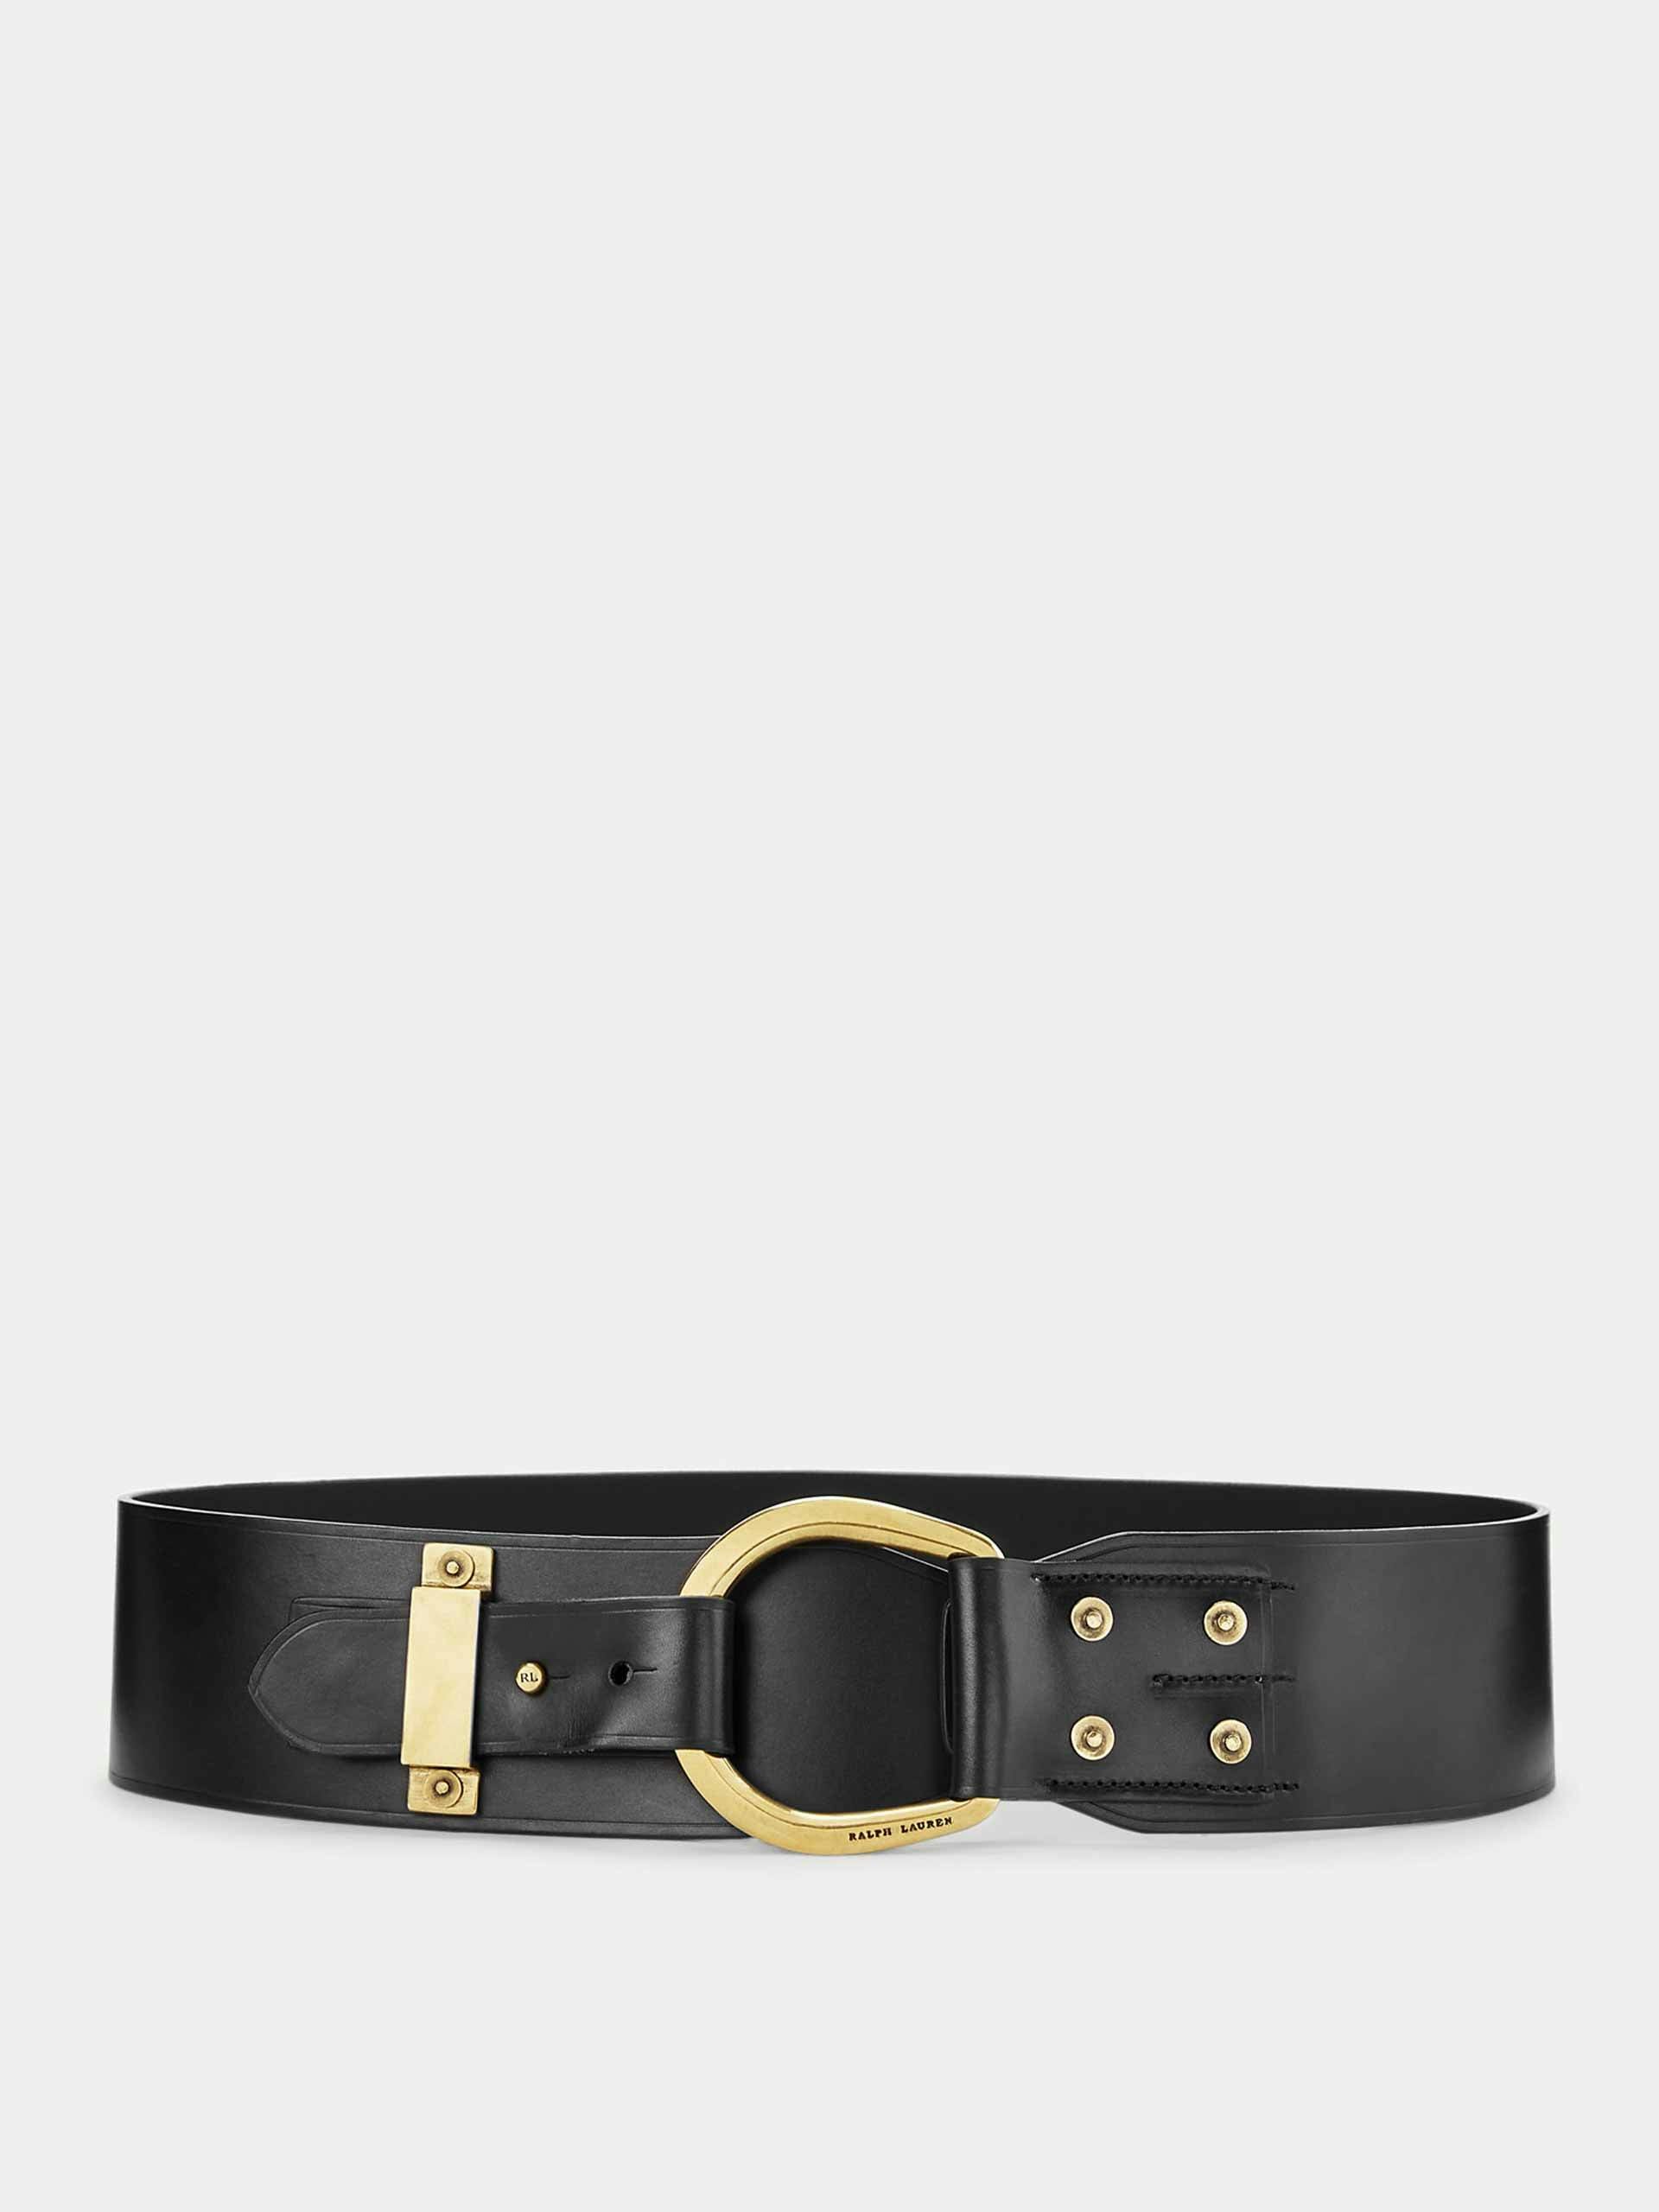 Horseshoe-ring leather belt